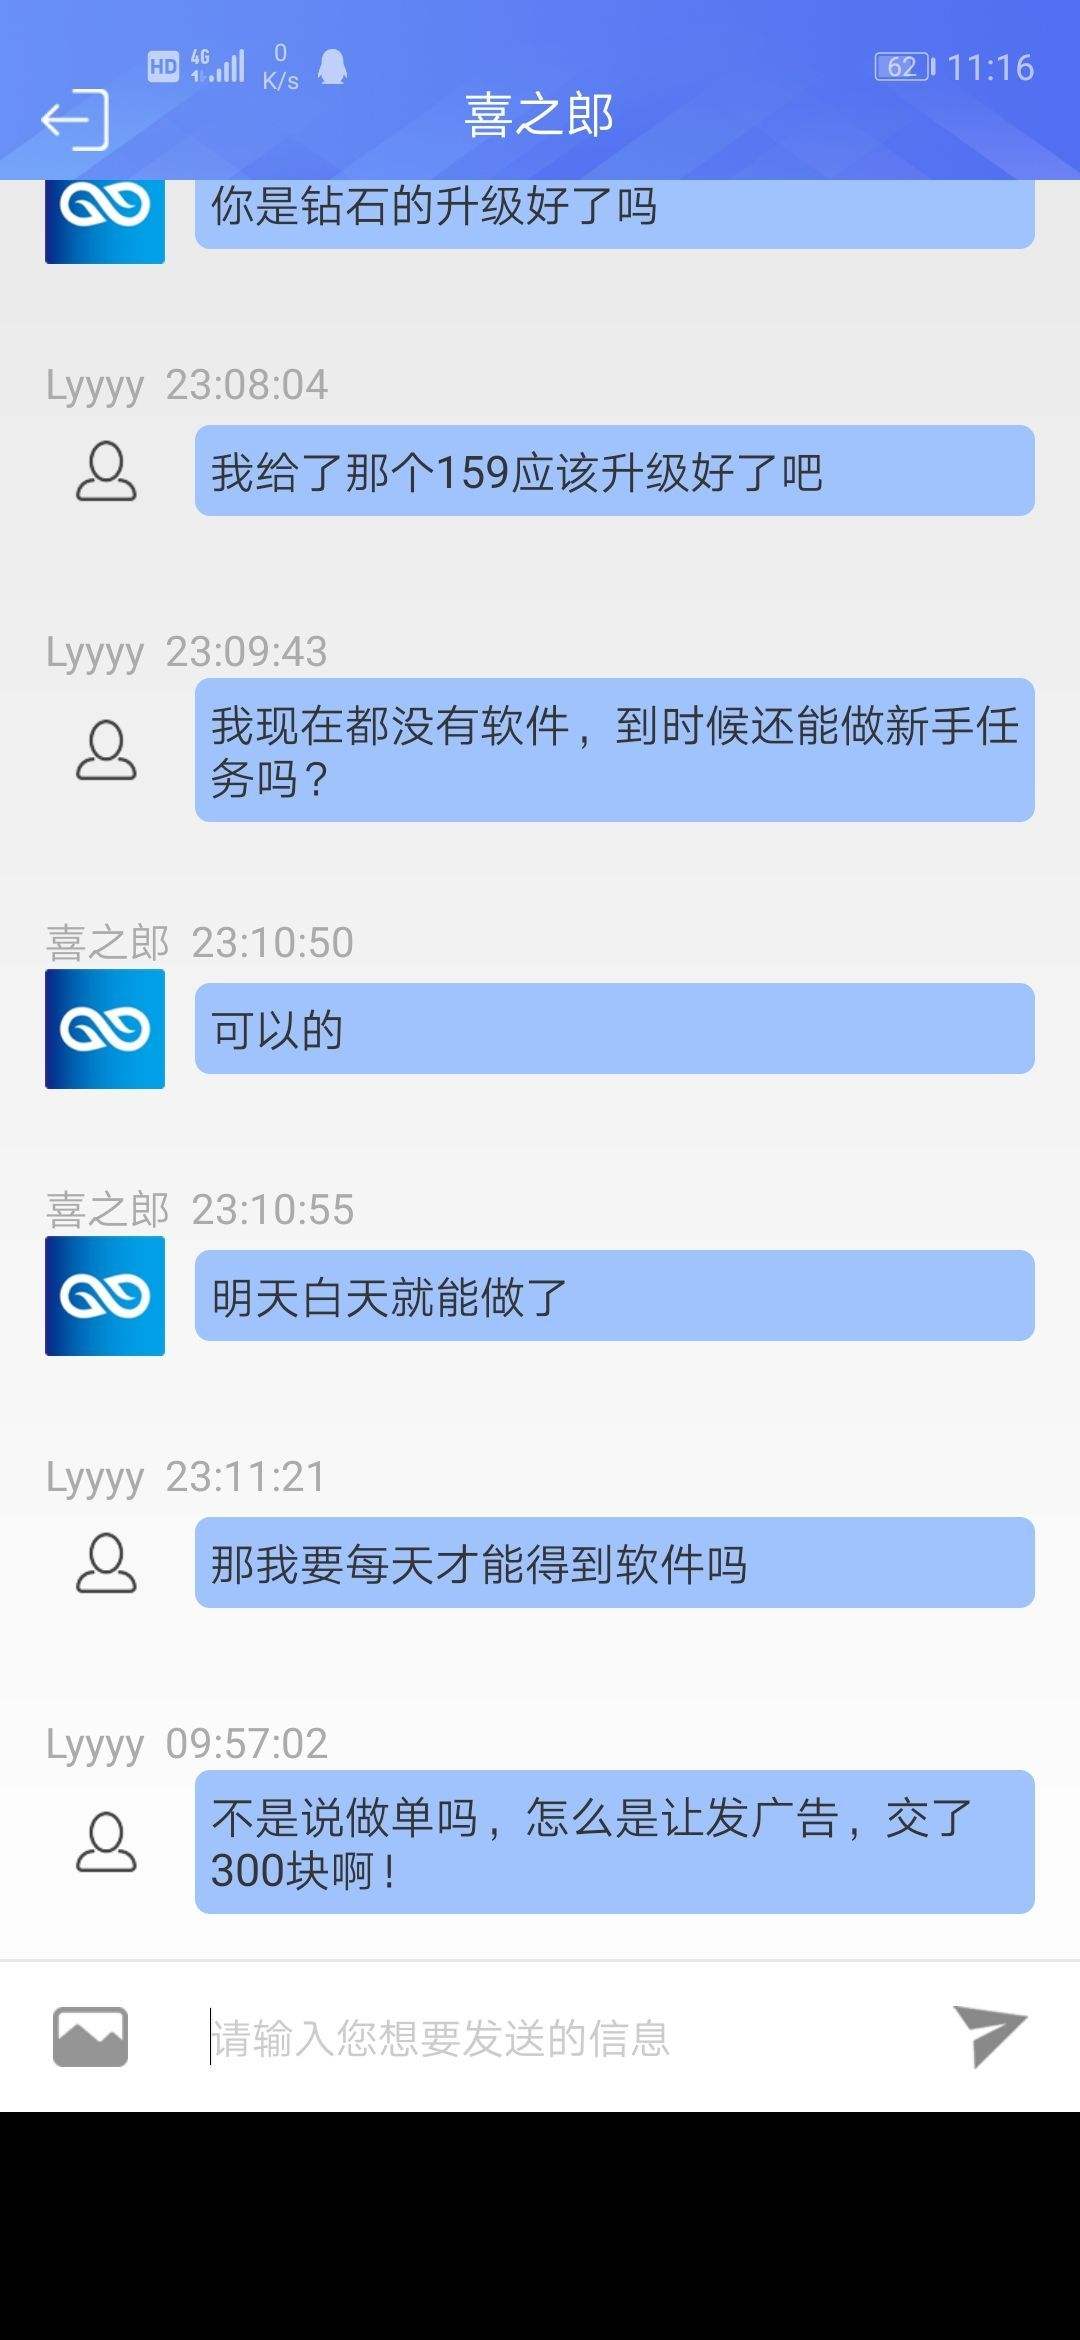 关于qq刷单网站_筷手业务平台_一分钱一万赞网站的信息